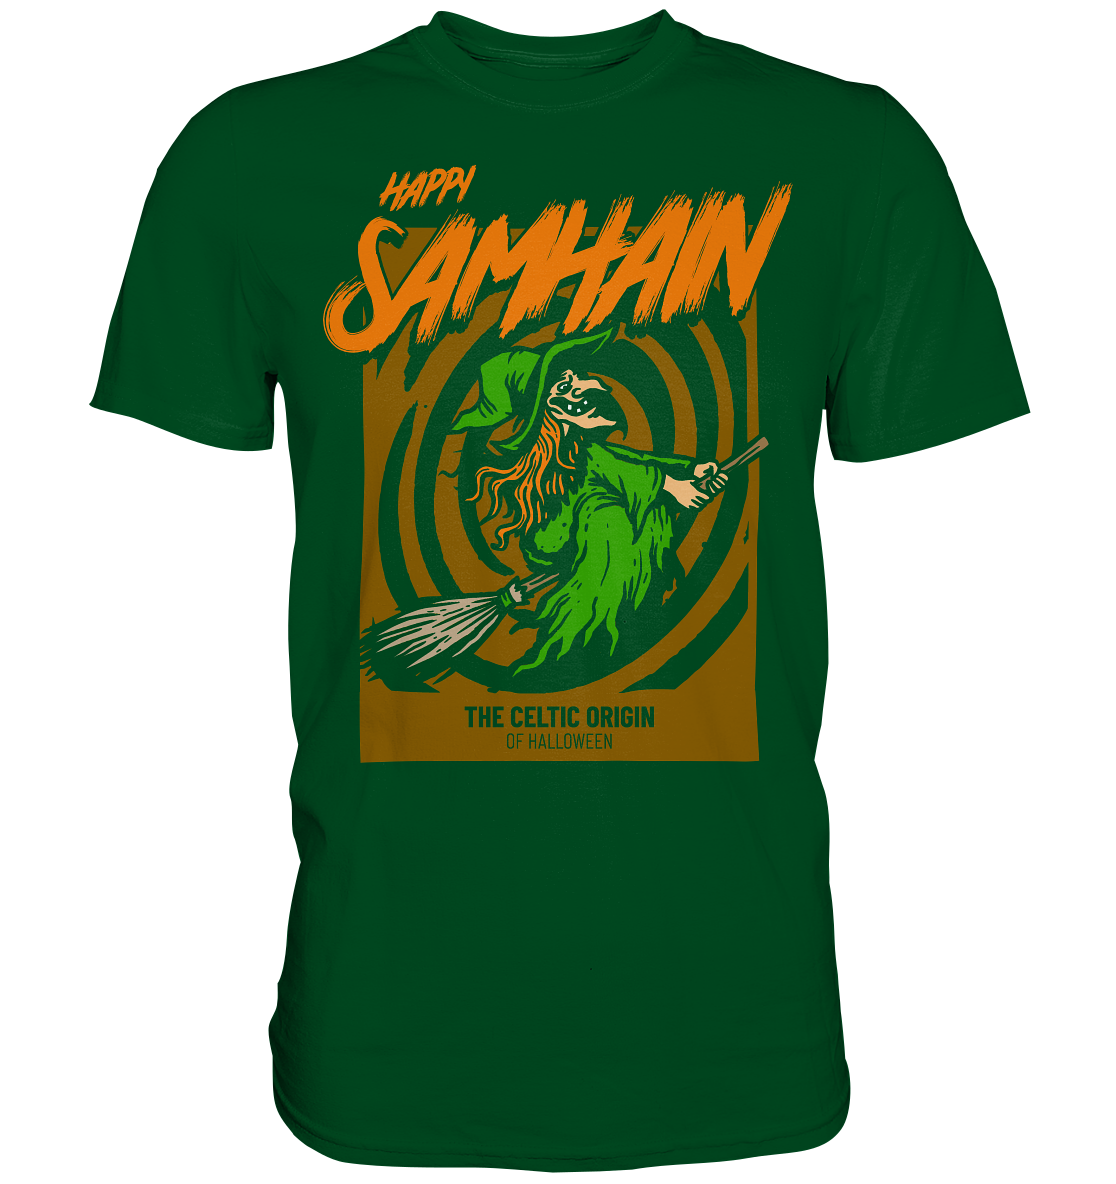 Happy Samhain "Witch" - Premium Shirt